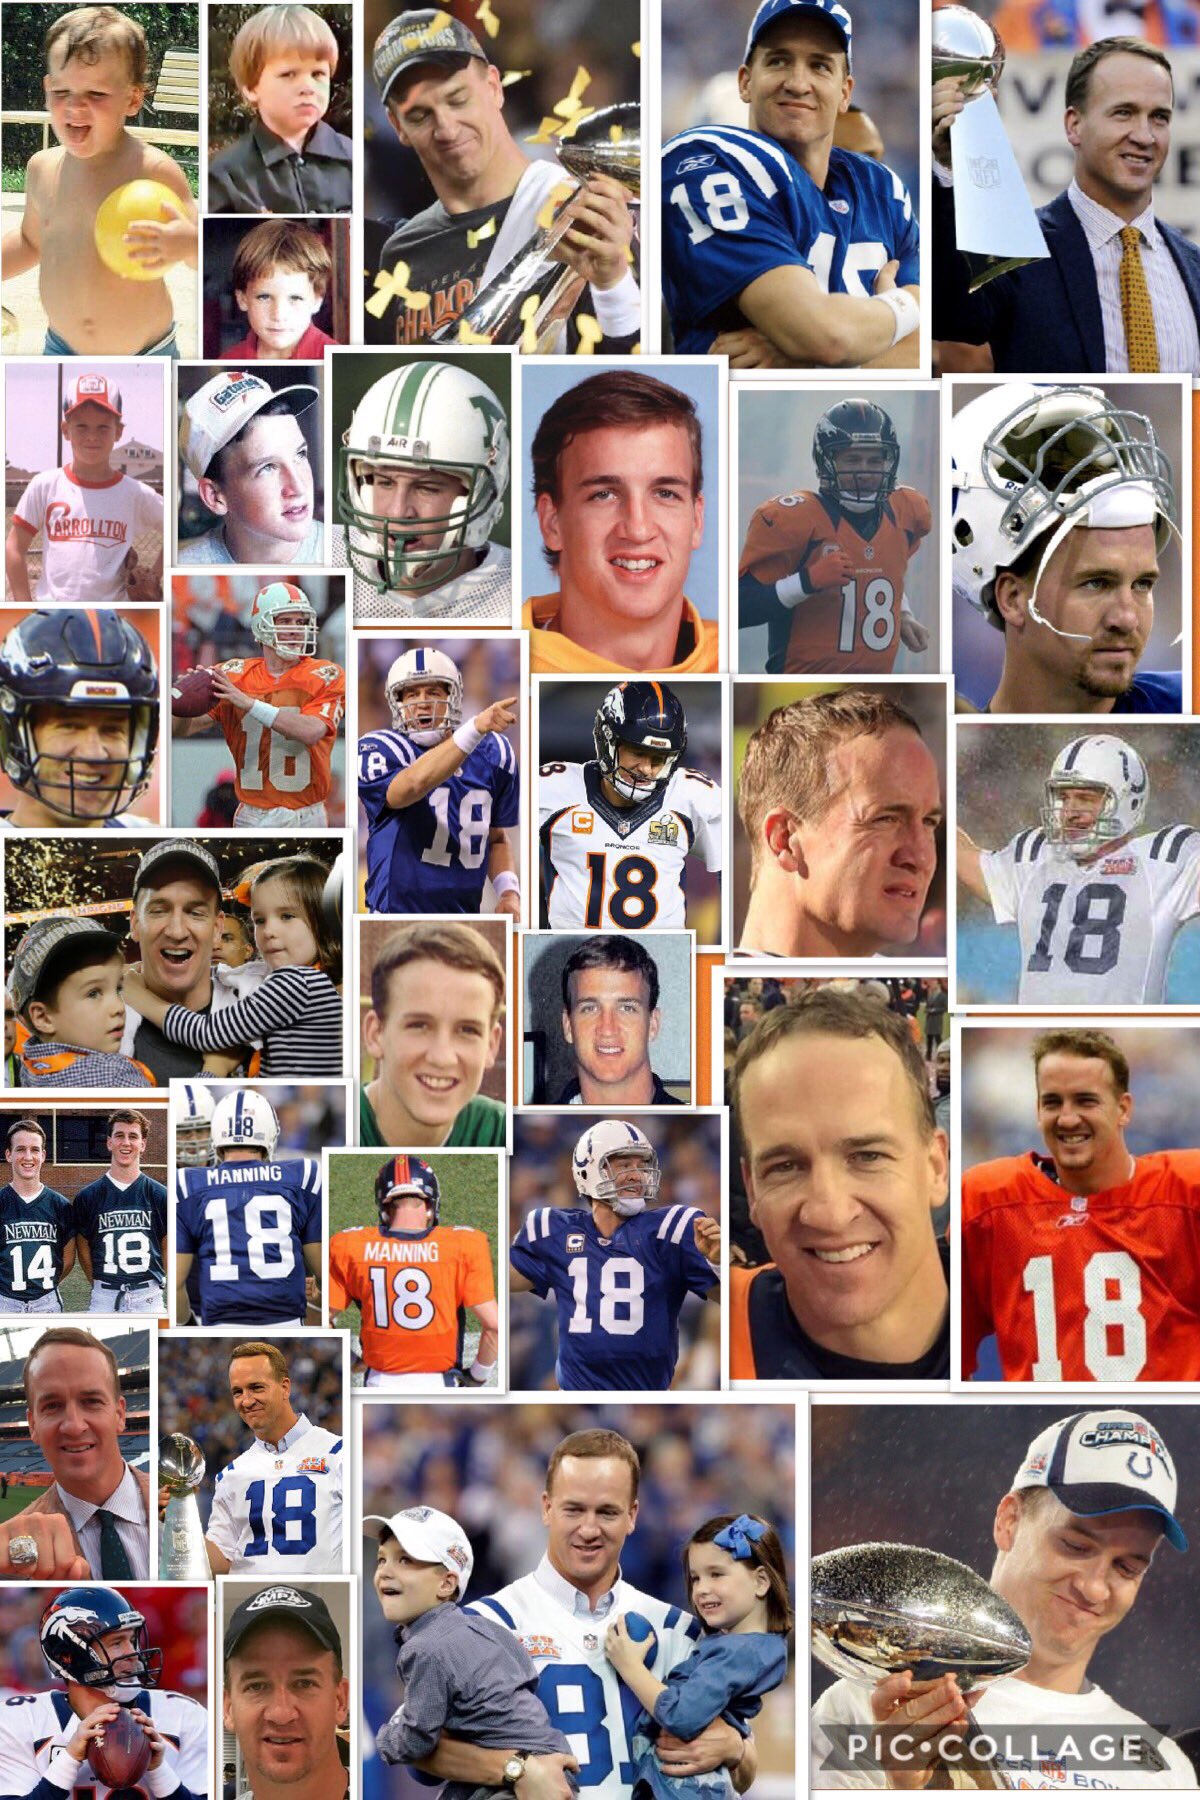 Happy Birthday to my hero Peyton Manning !!  